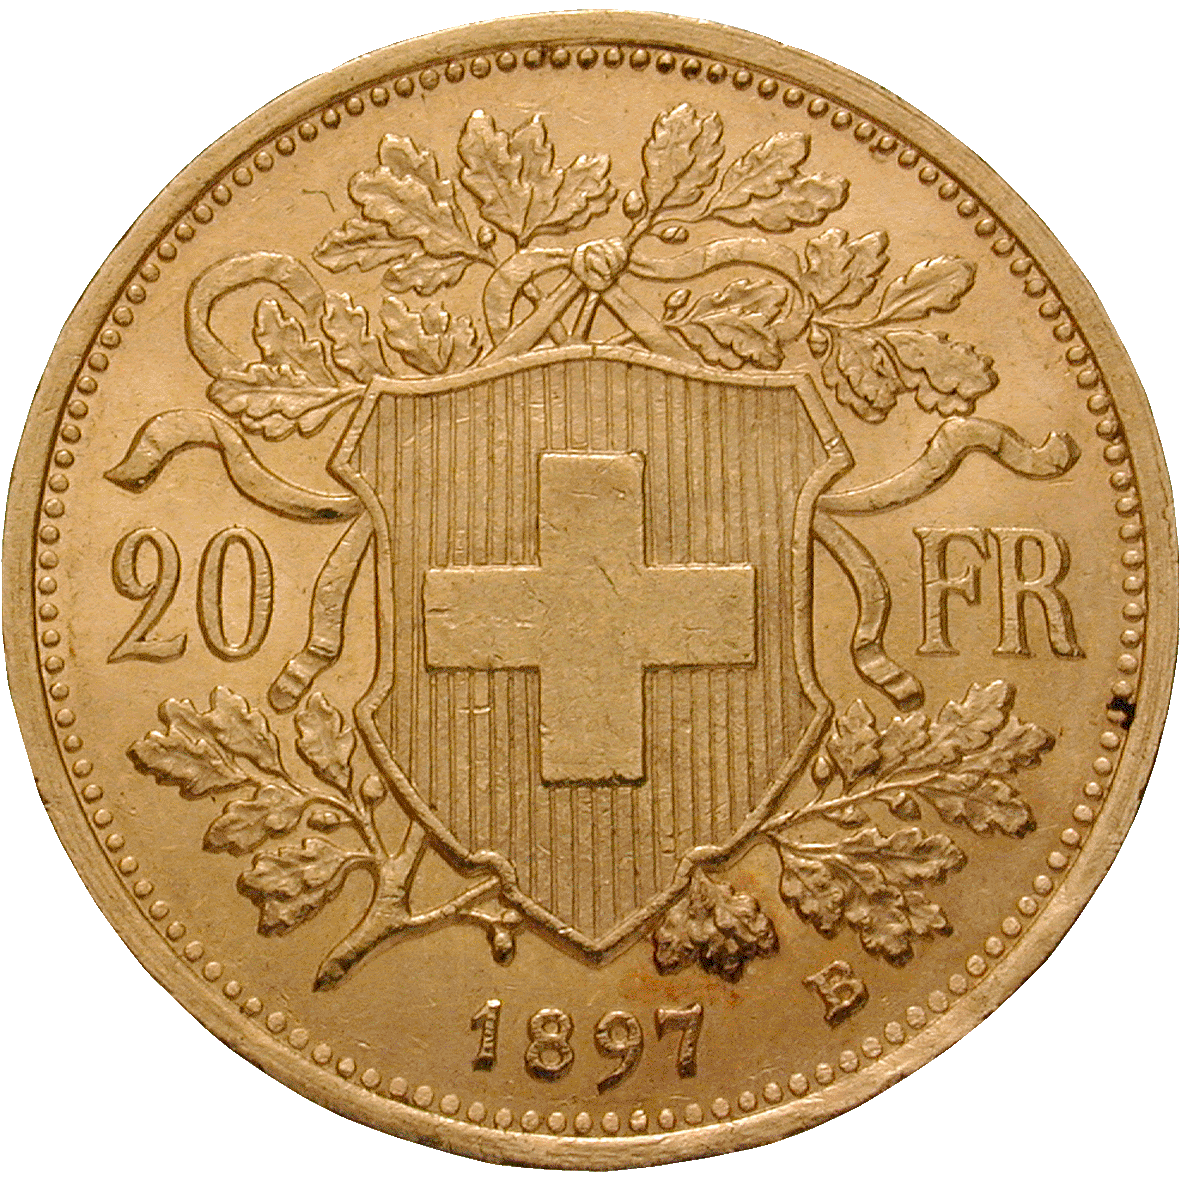 Schweizerische Eidgenossenschaft, 20 Franken (Vreneli) 1897 (reverse)